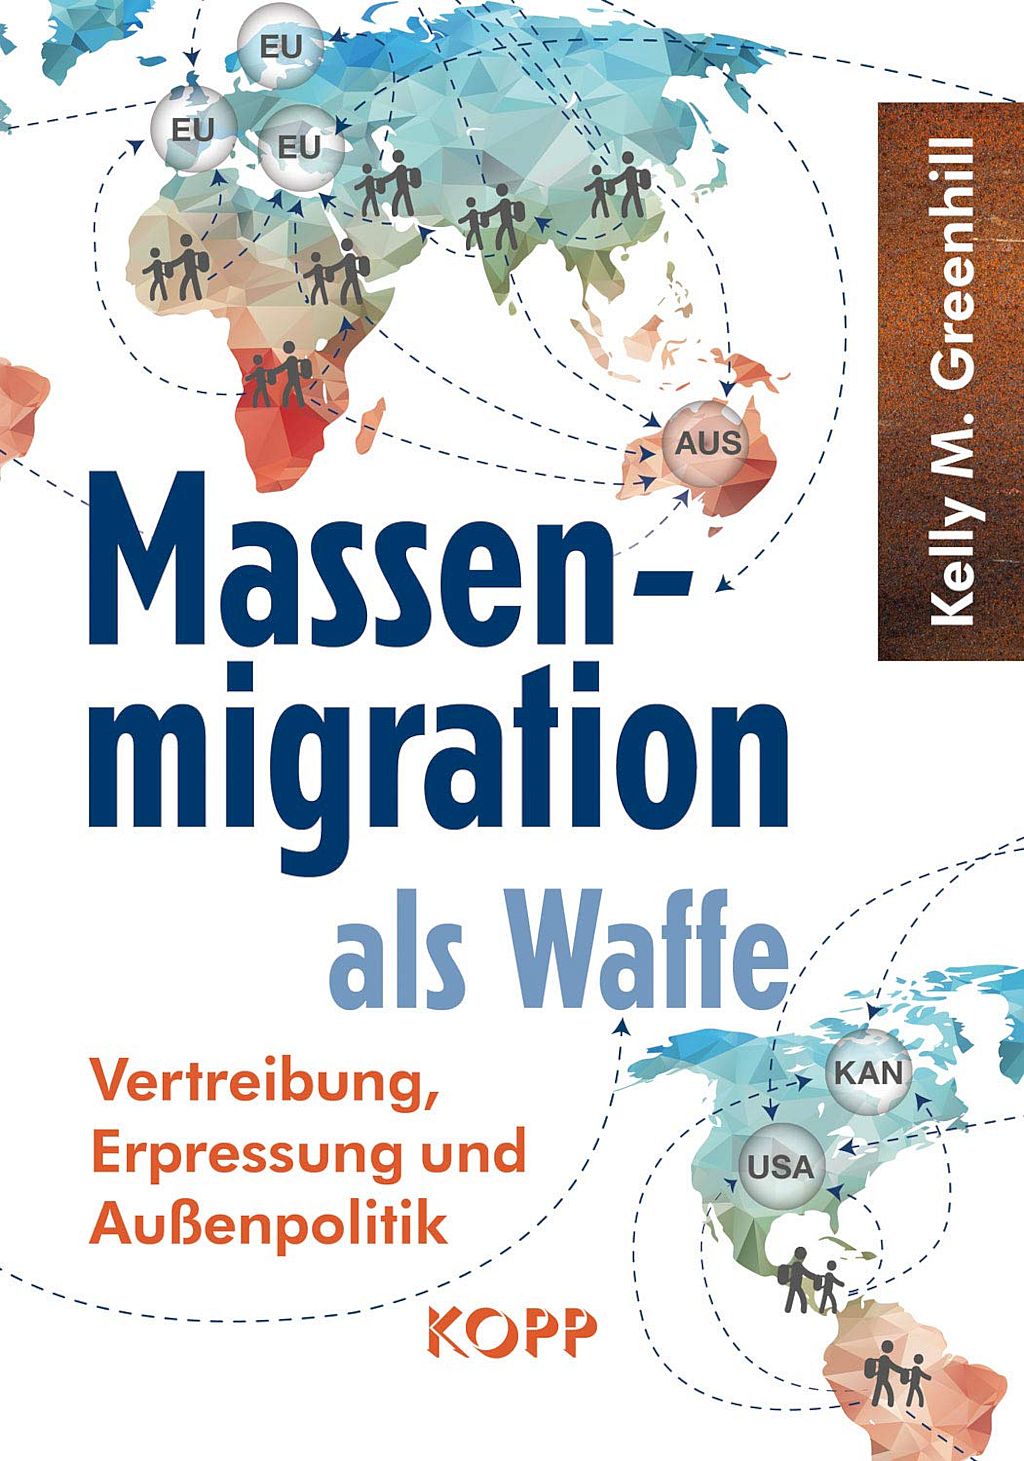 La migration de masse comme arme : expulsion, chantage et politique étrangère